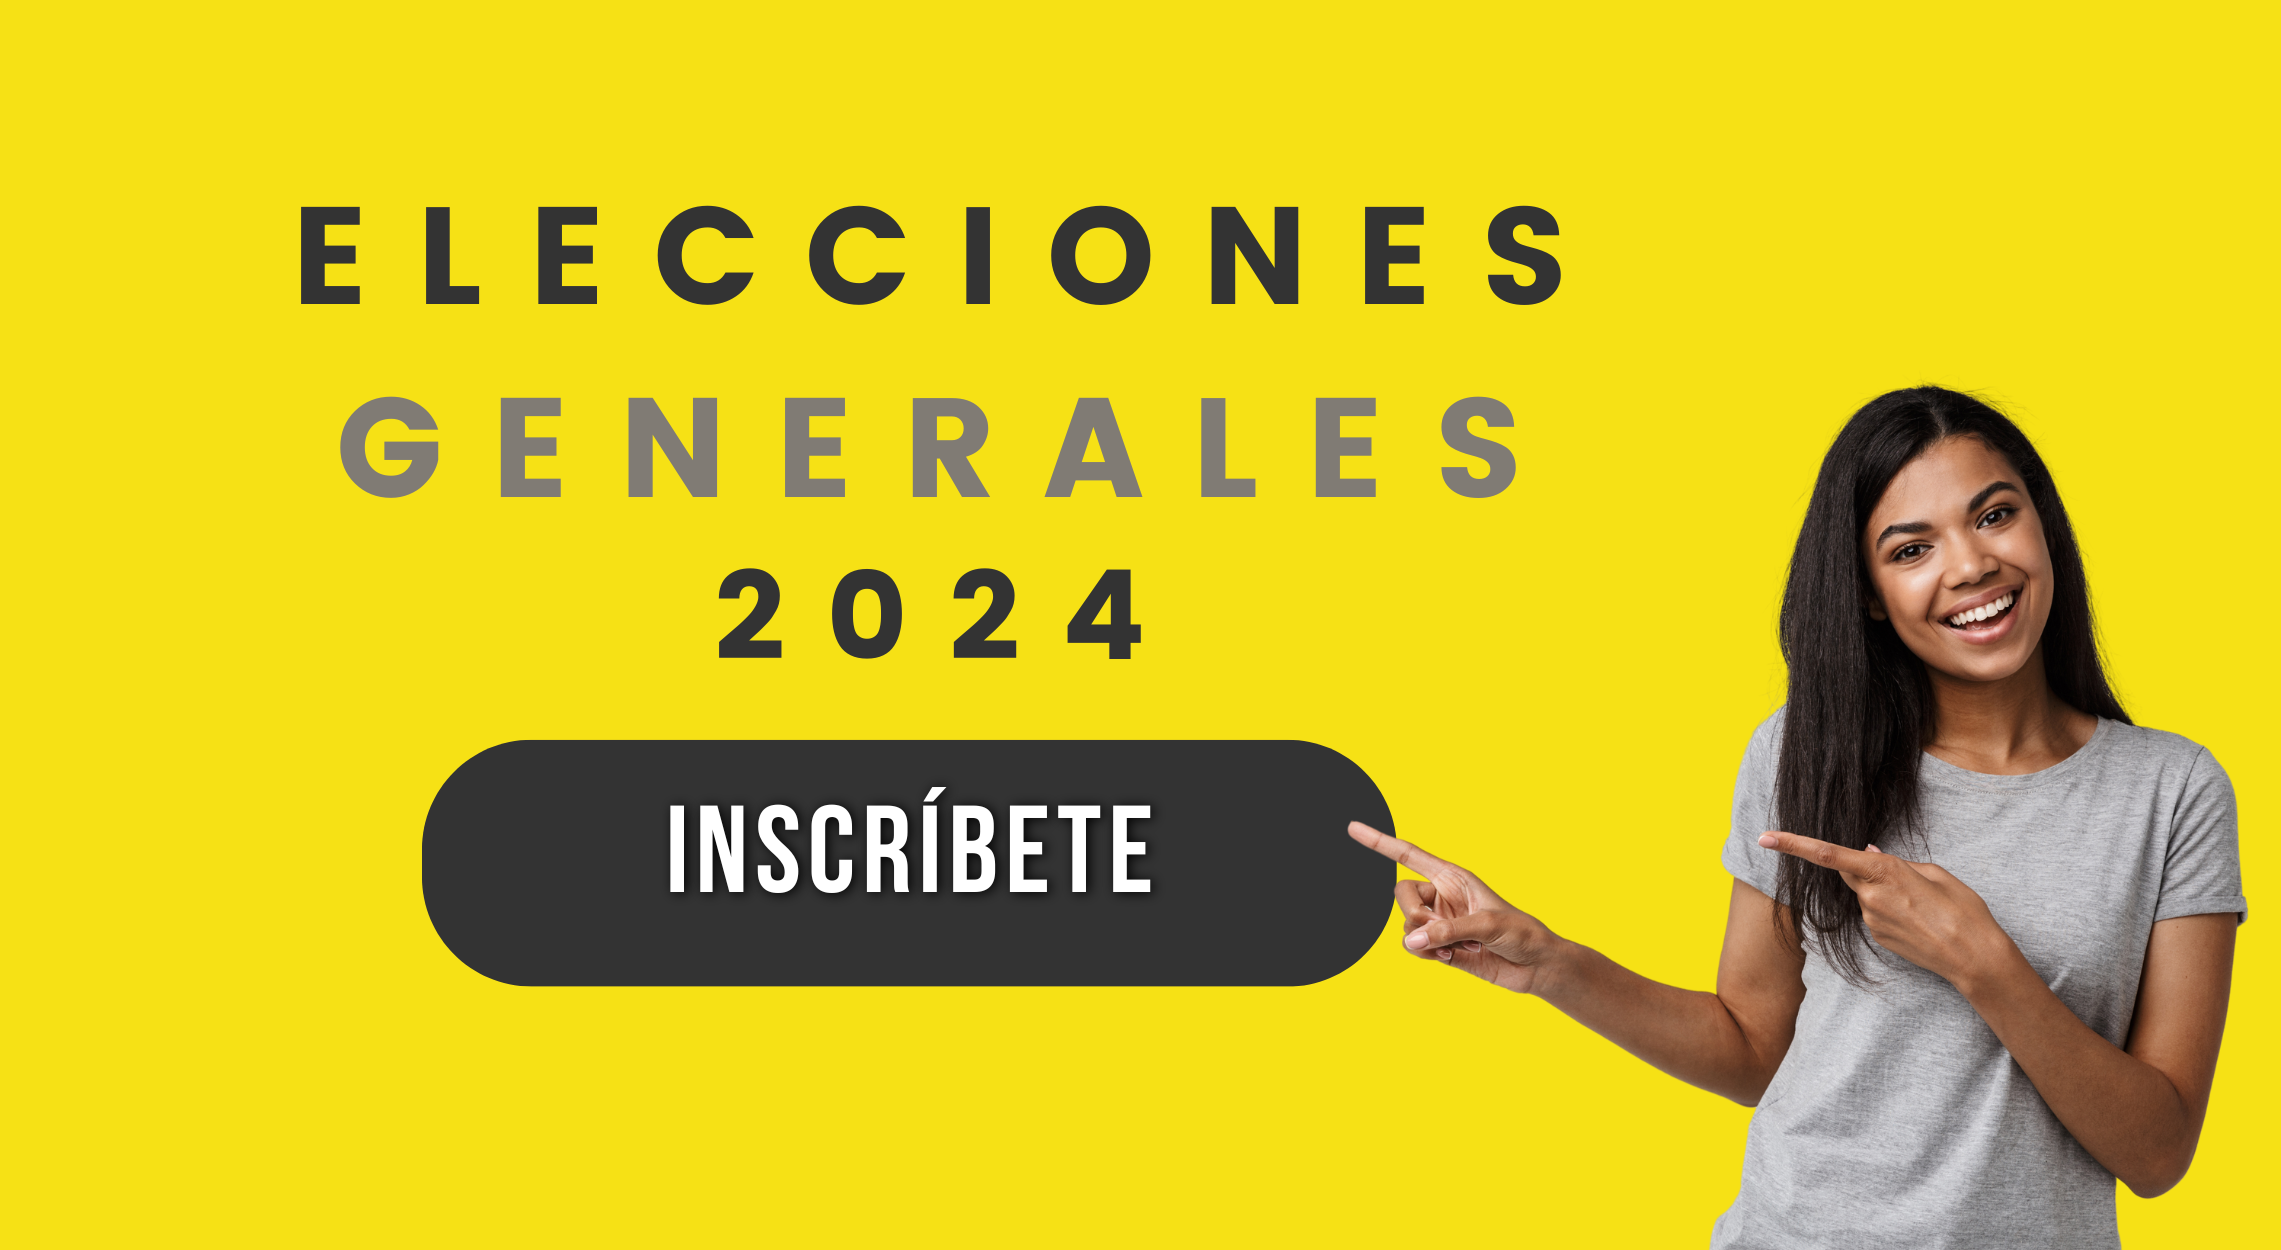 Elecciones Generales 2024 - Inscríbete